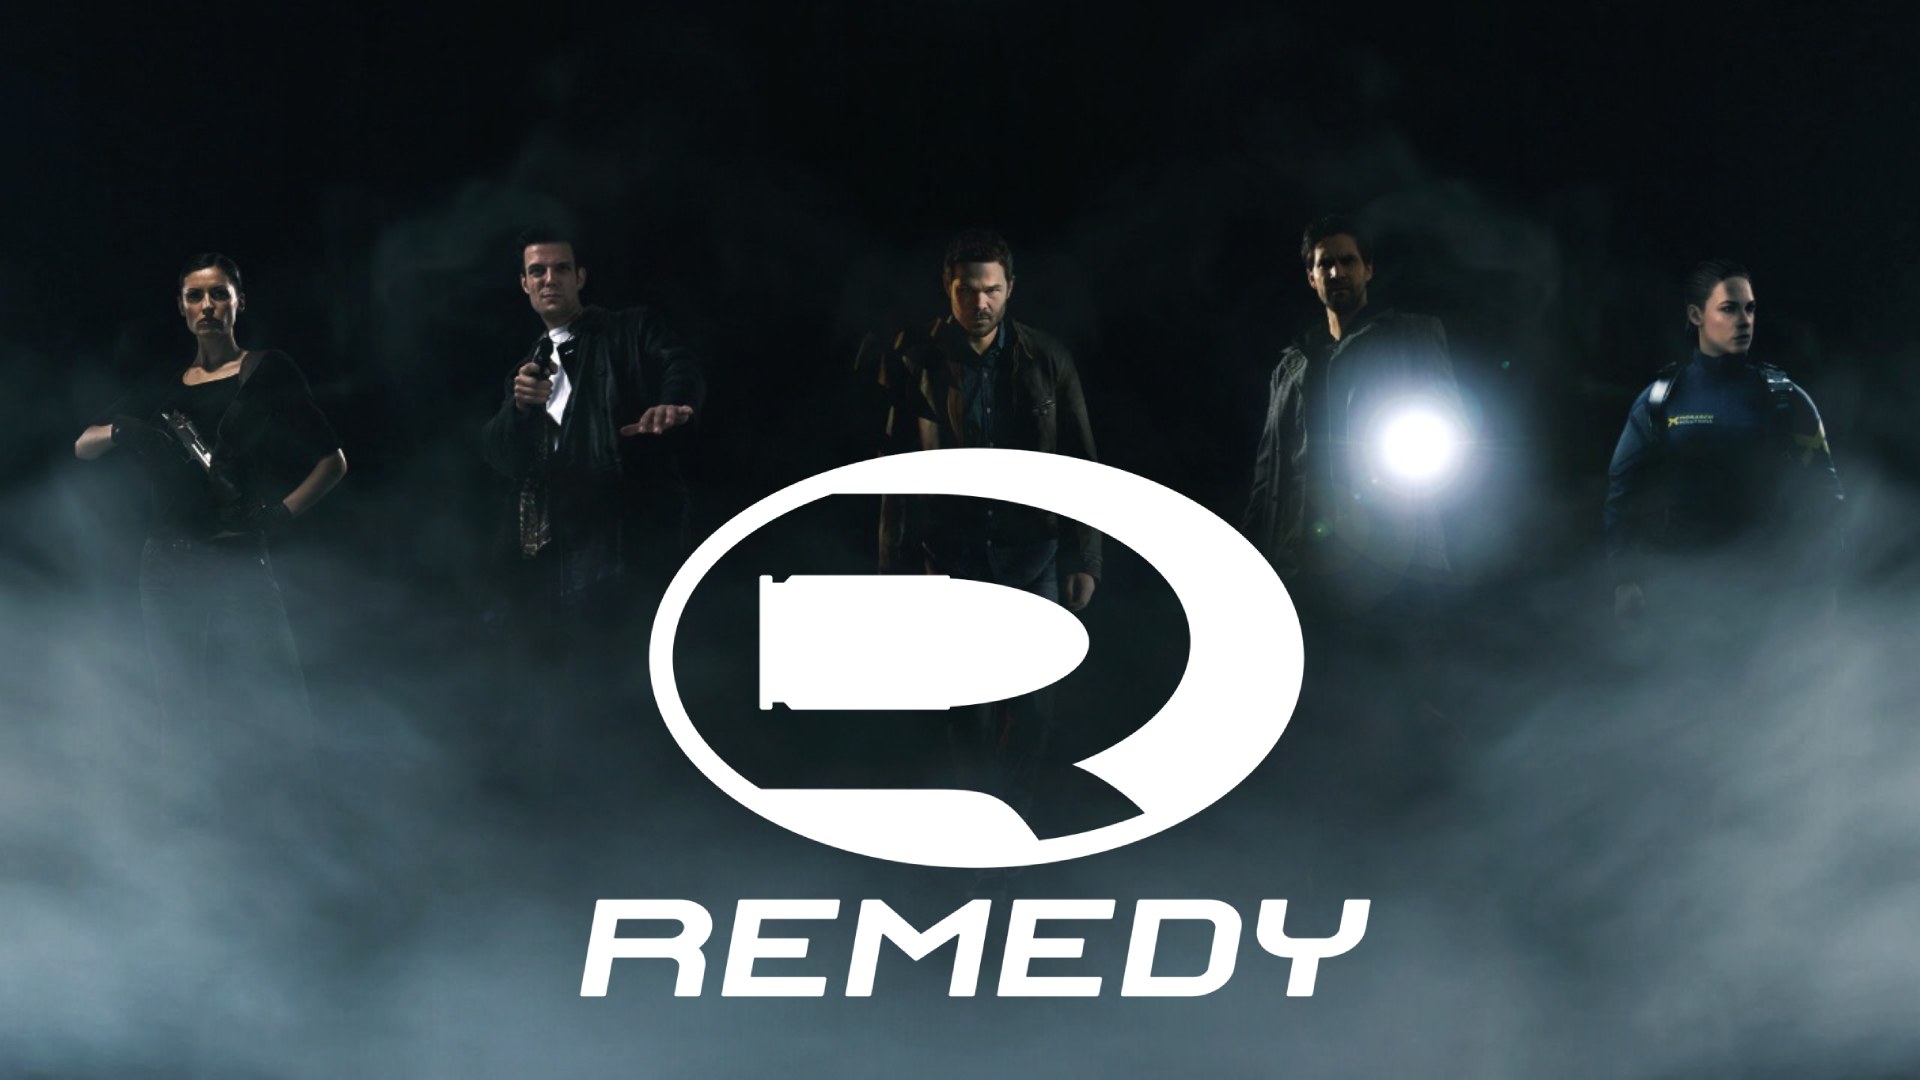 استودیو Remedy قصد دارد هر سال یک بازی جدید منتشر کند